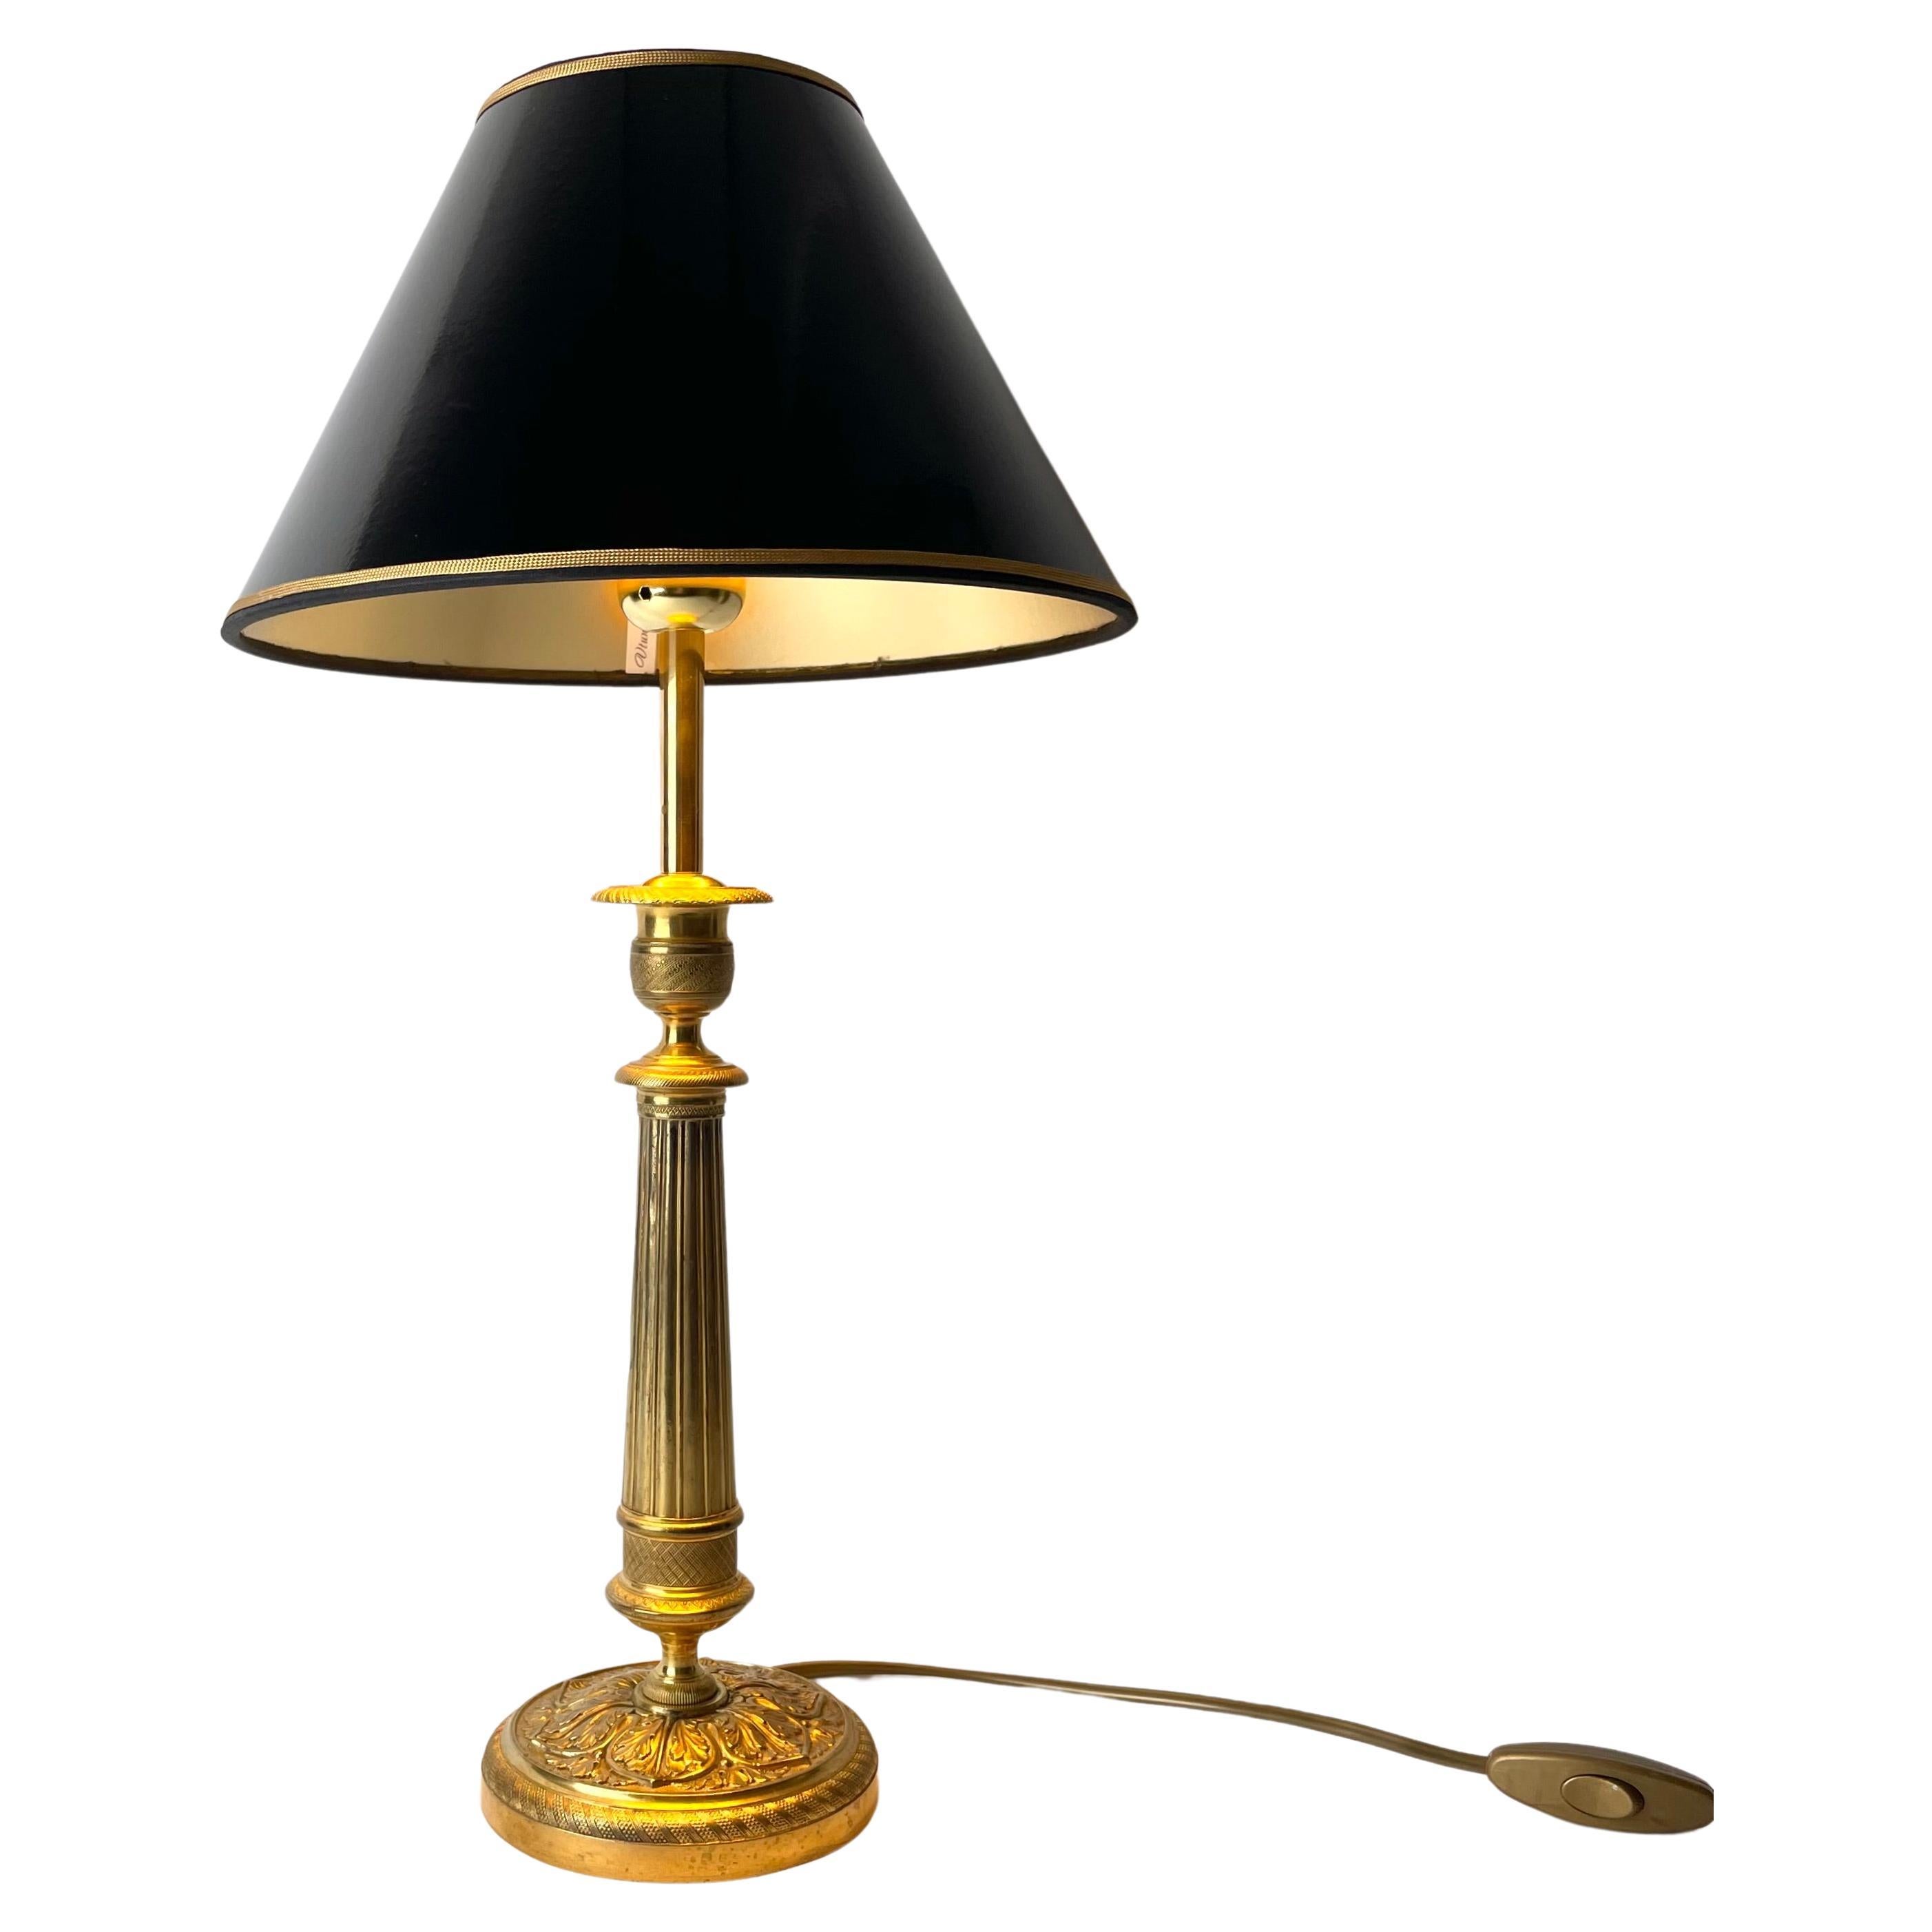 Lampe de table élégante en bronze. Un chandelier Empire des années 1820